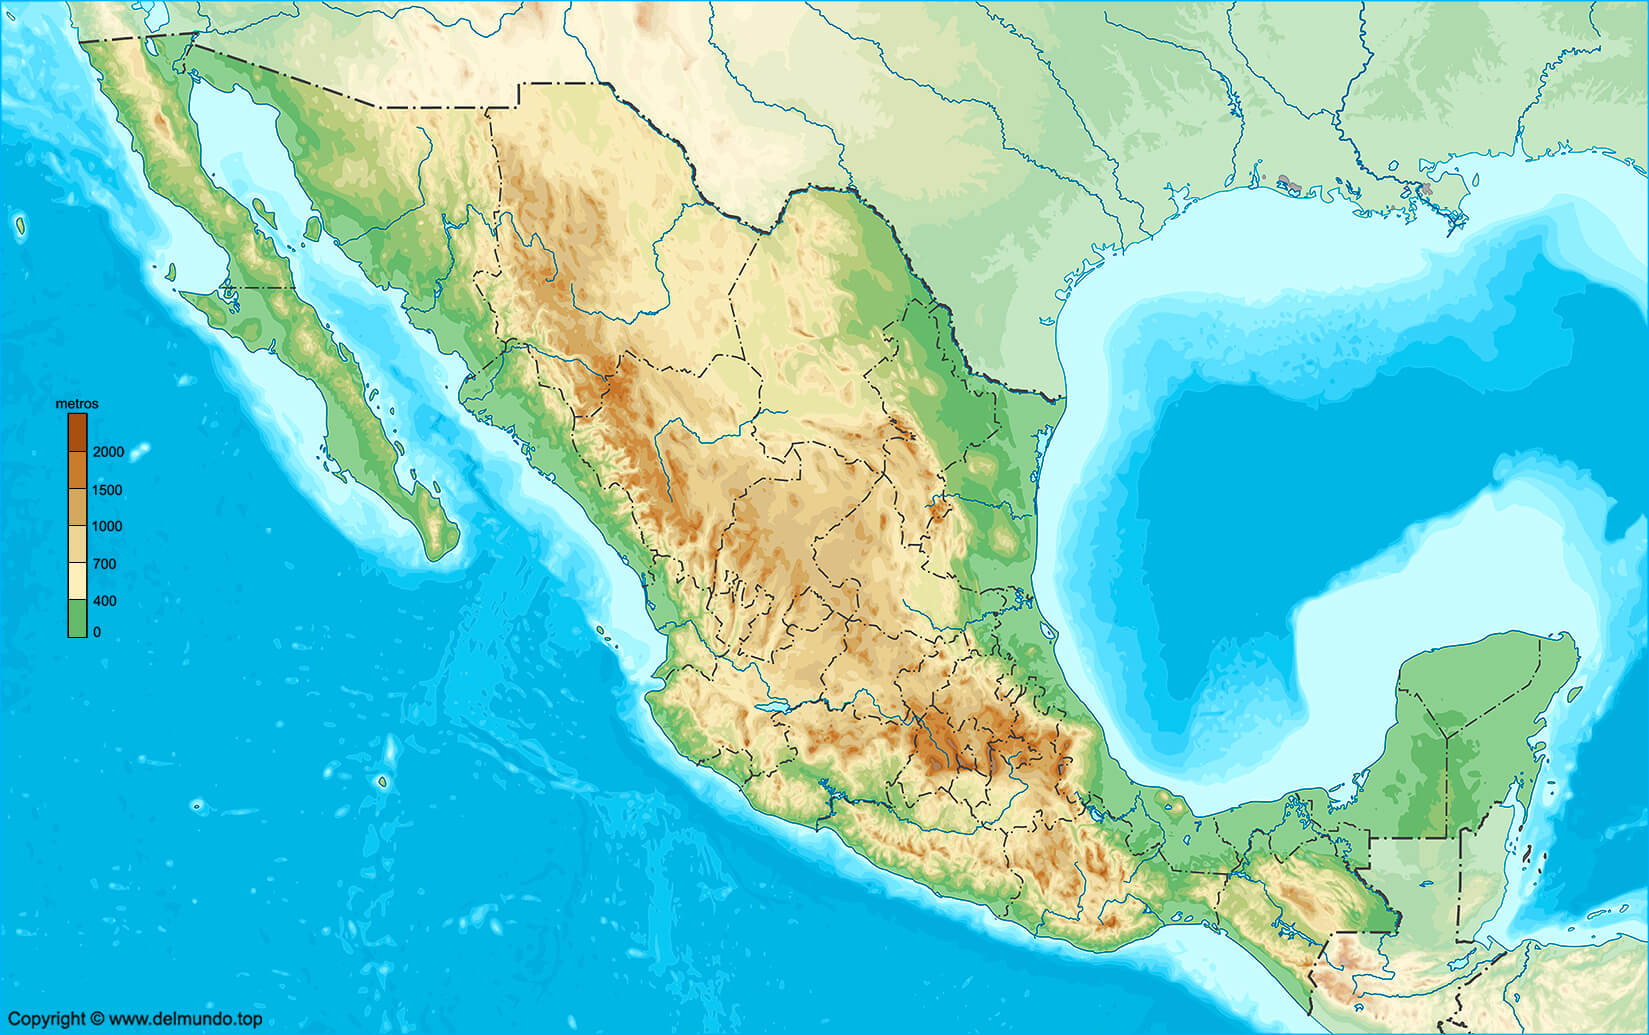 Mapa físico de México sin nombres